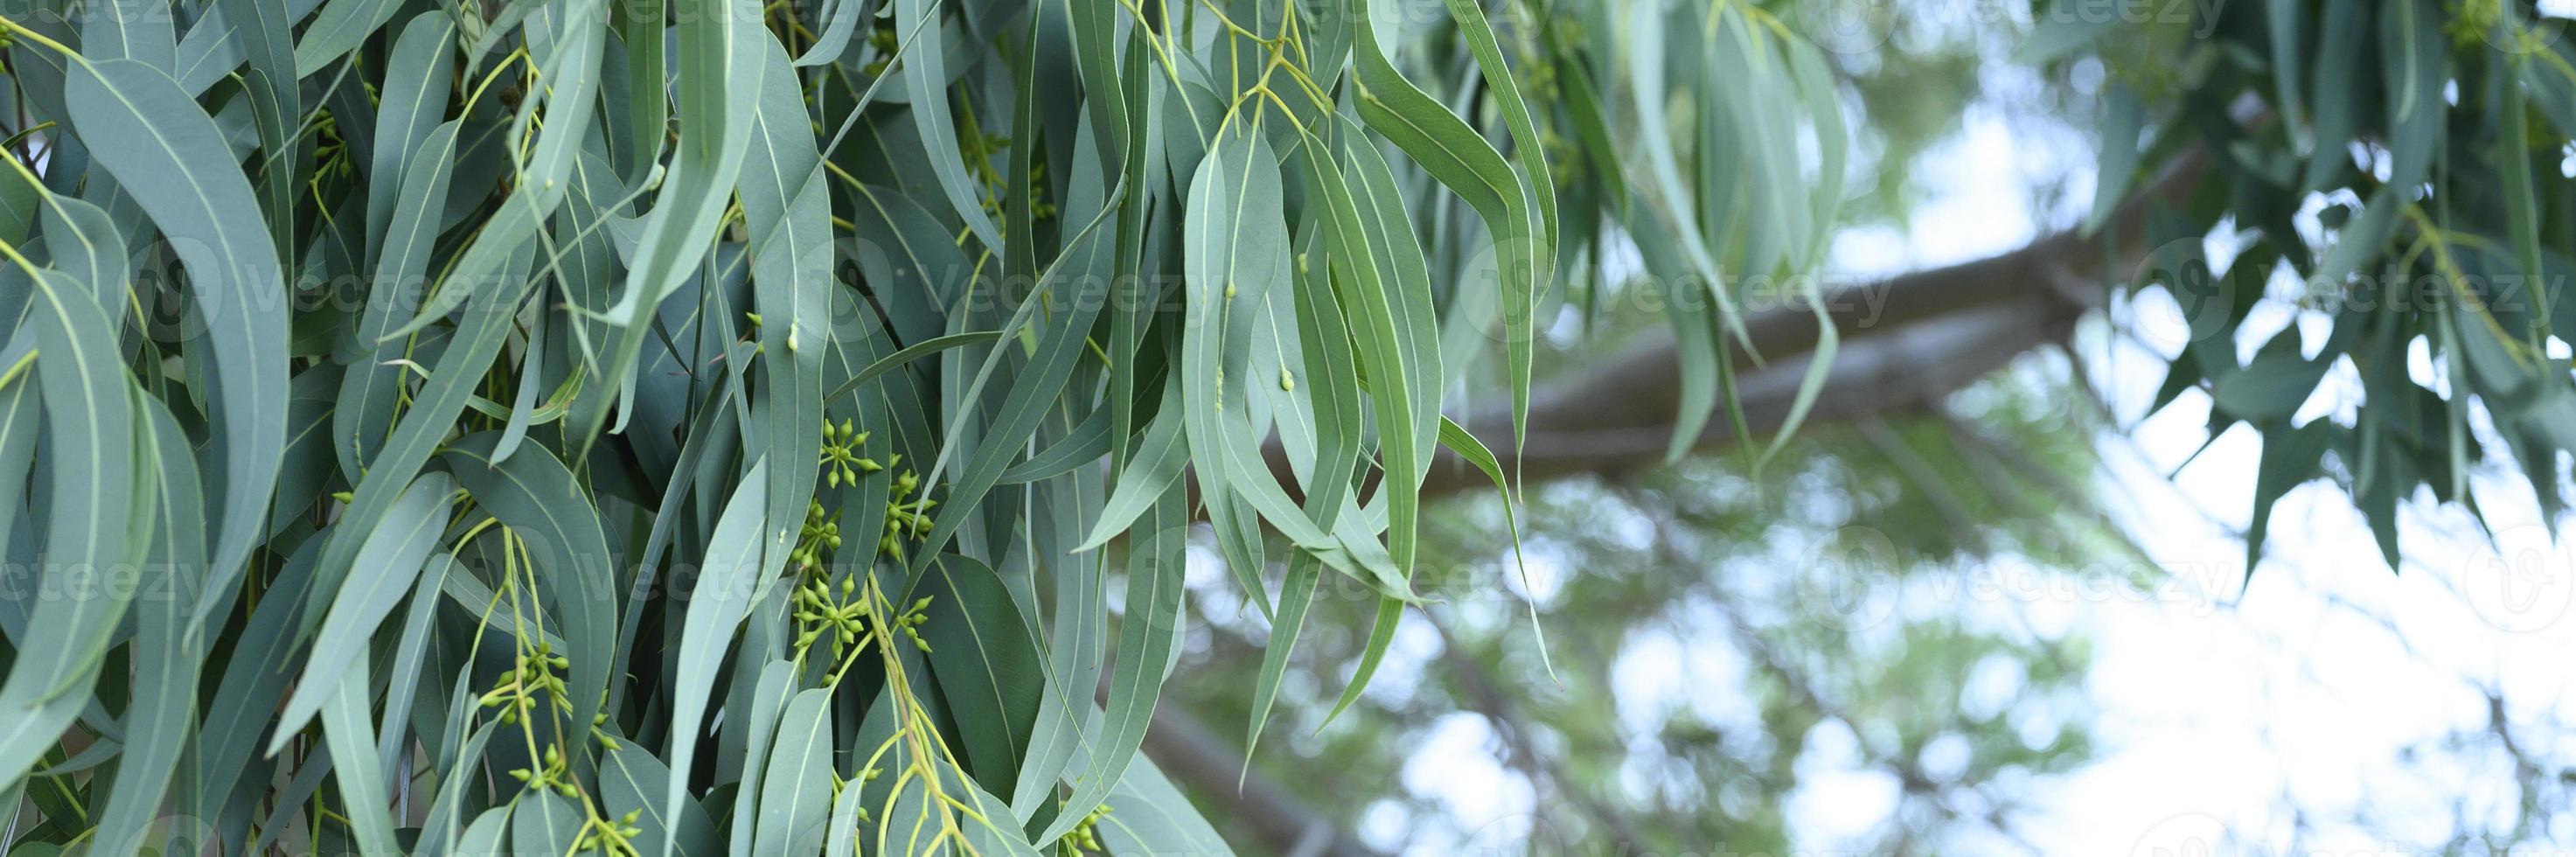 eukalyptusblad. gren eukalyptusträd natur utomhus bakgrund foto